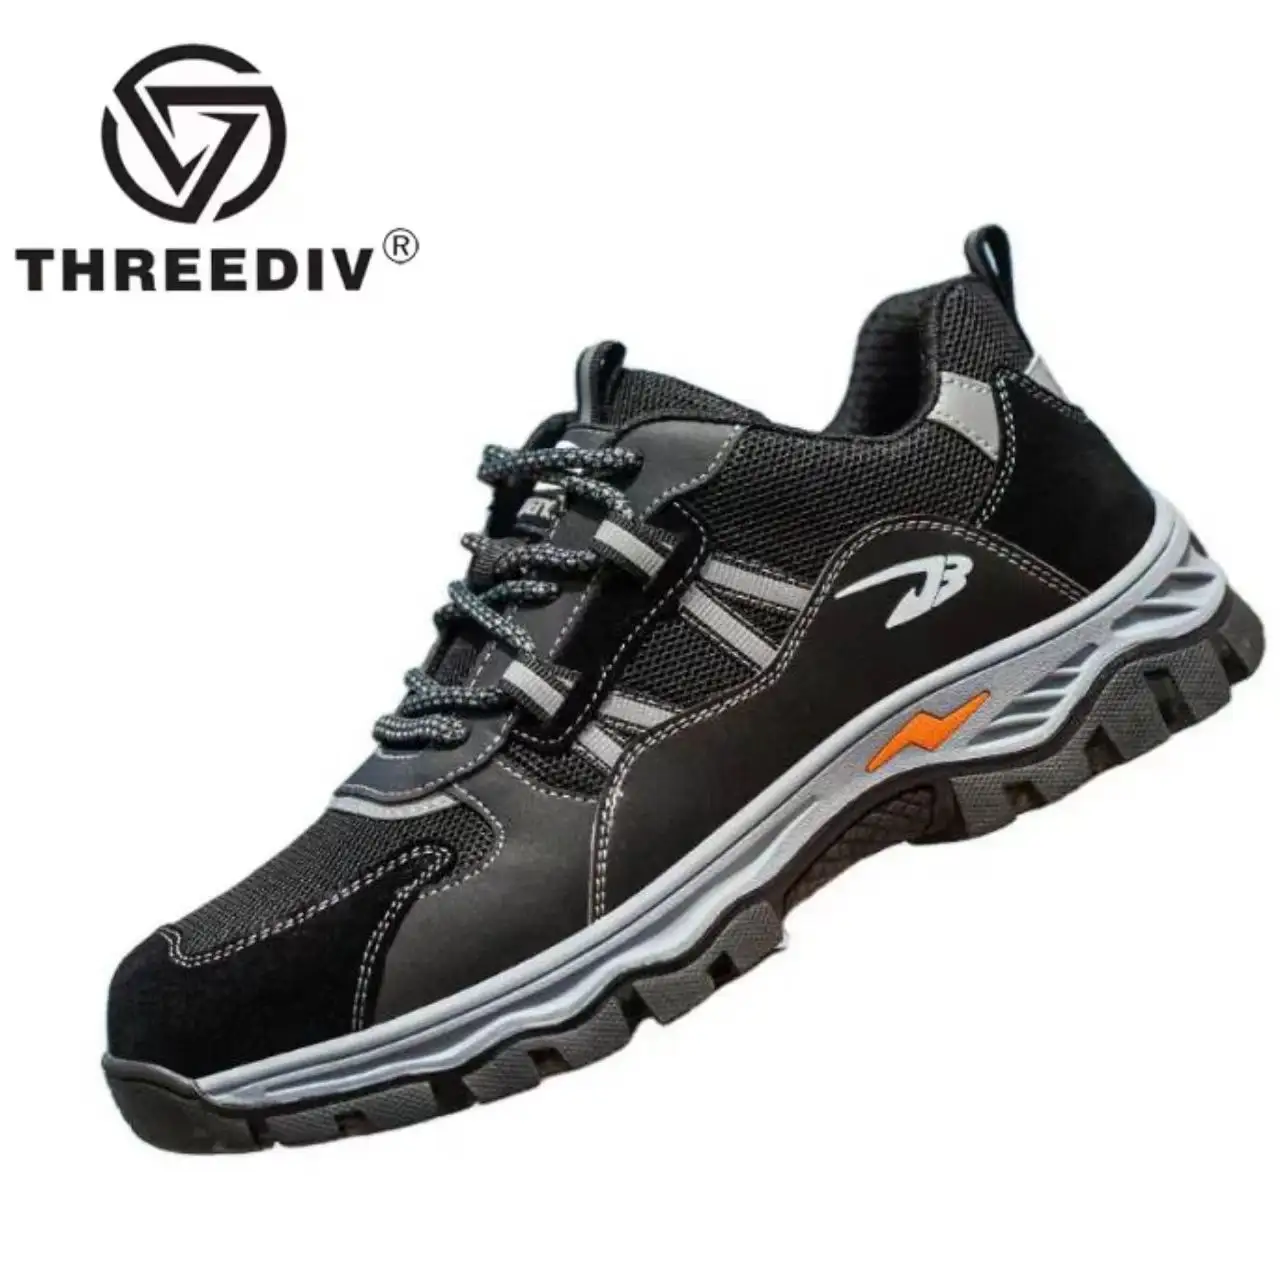 THREEDIV venda quente industrial protetora respirável trabalho botas de aço anti-smashing anti-piercing sapatos de segurança malha preta